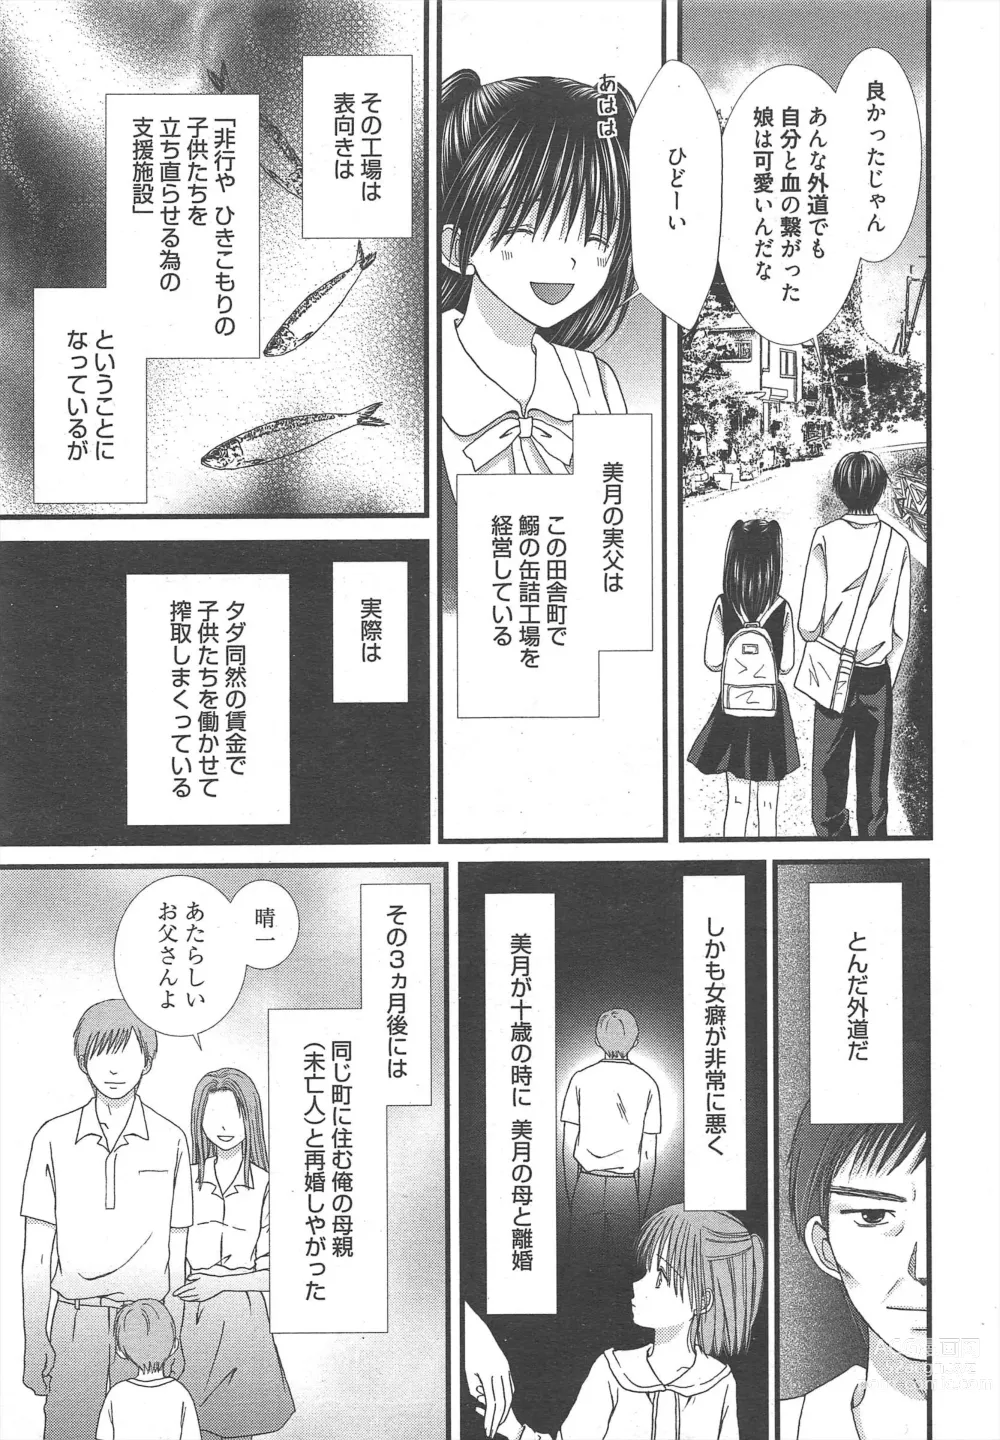 Page 11 of manga Manga Bangaichi 2012-12